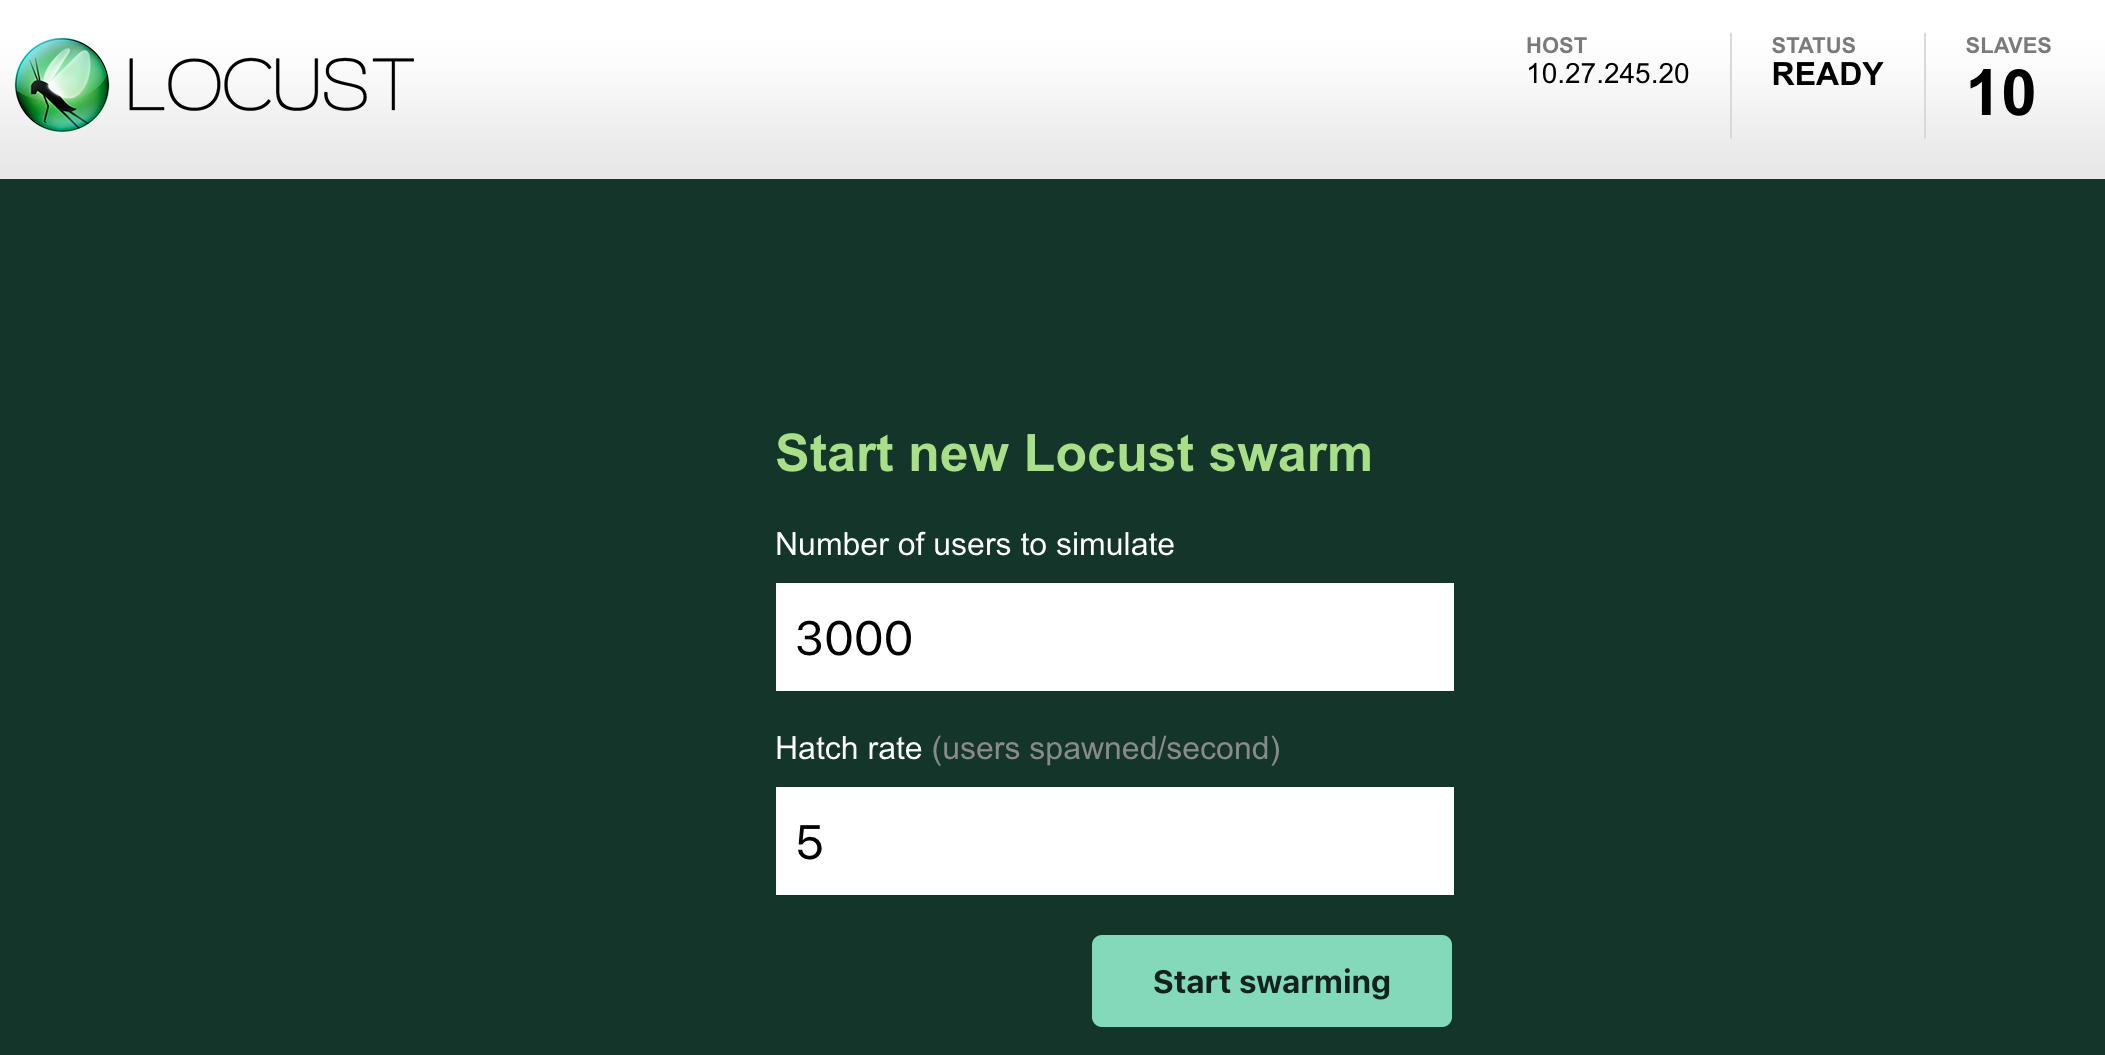 Inicia un nuevo generador de Locust.